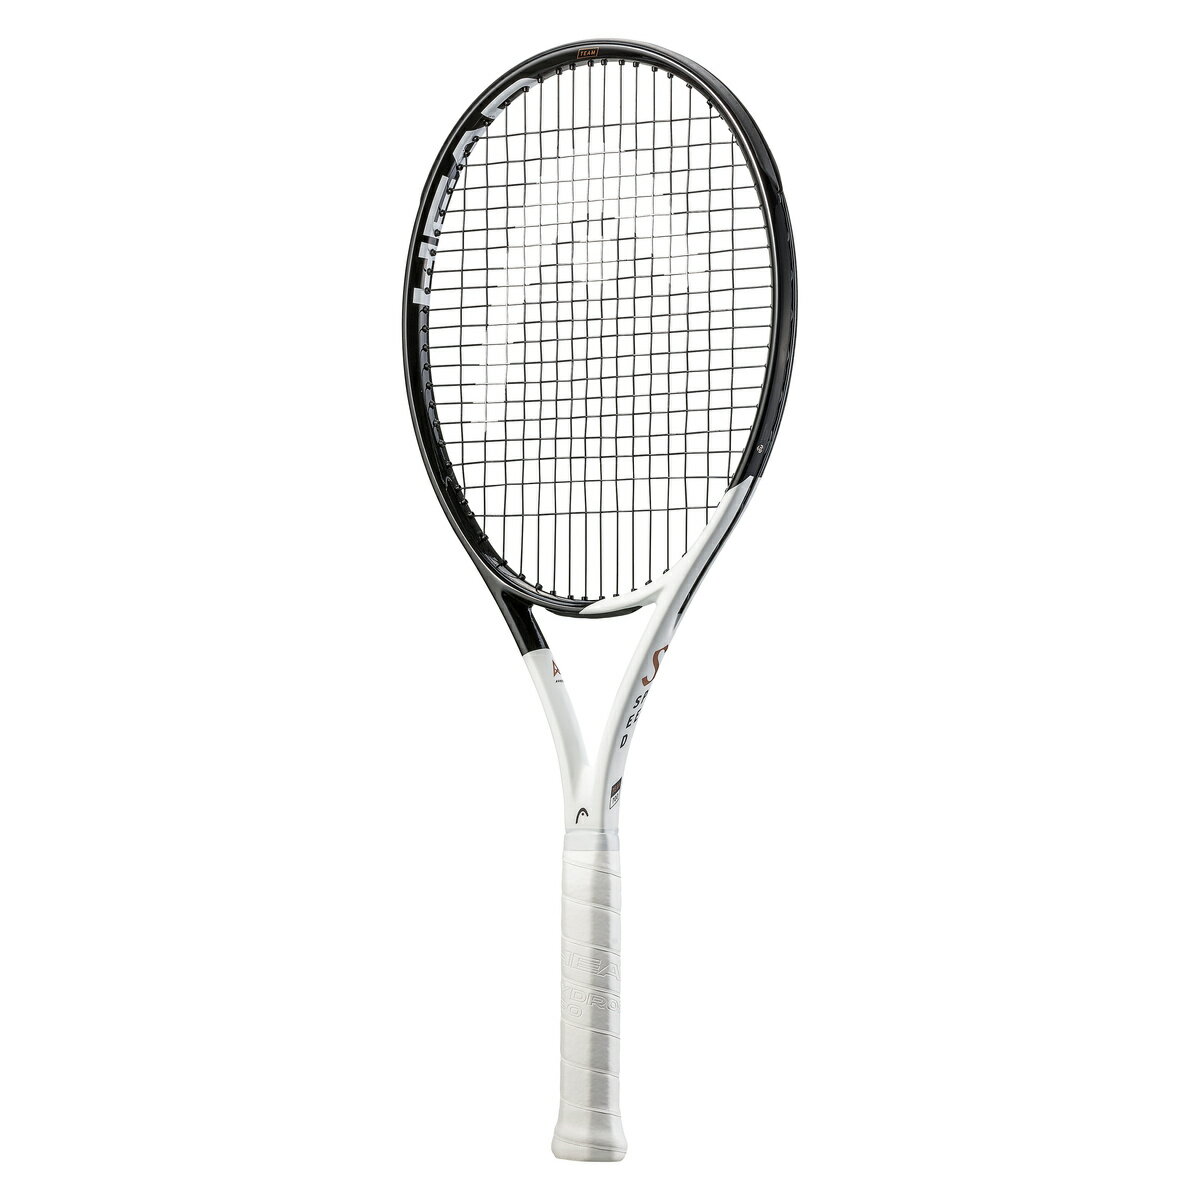 経典ブランド ビガース 軟式テニスラケット ホワイト×レッド 張上 Vigors VSTN-6753 返品種別A 